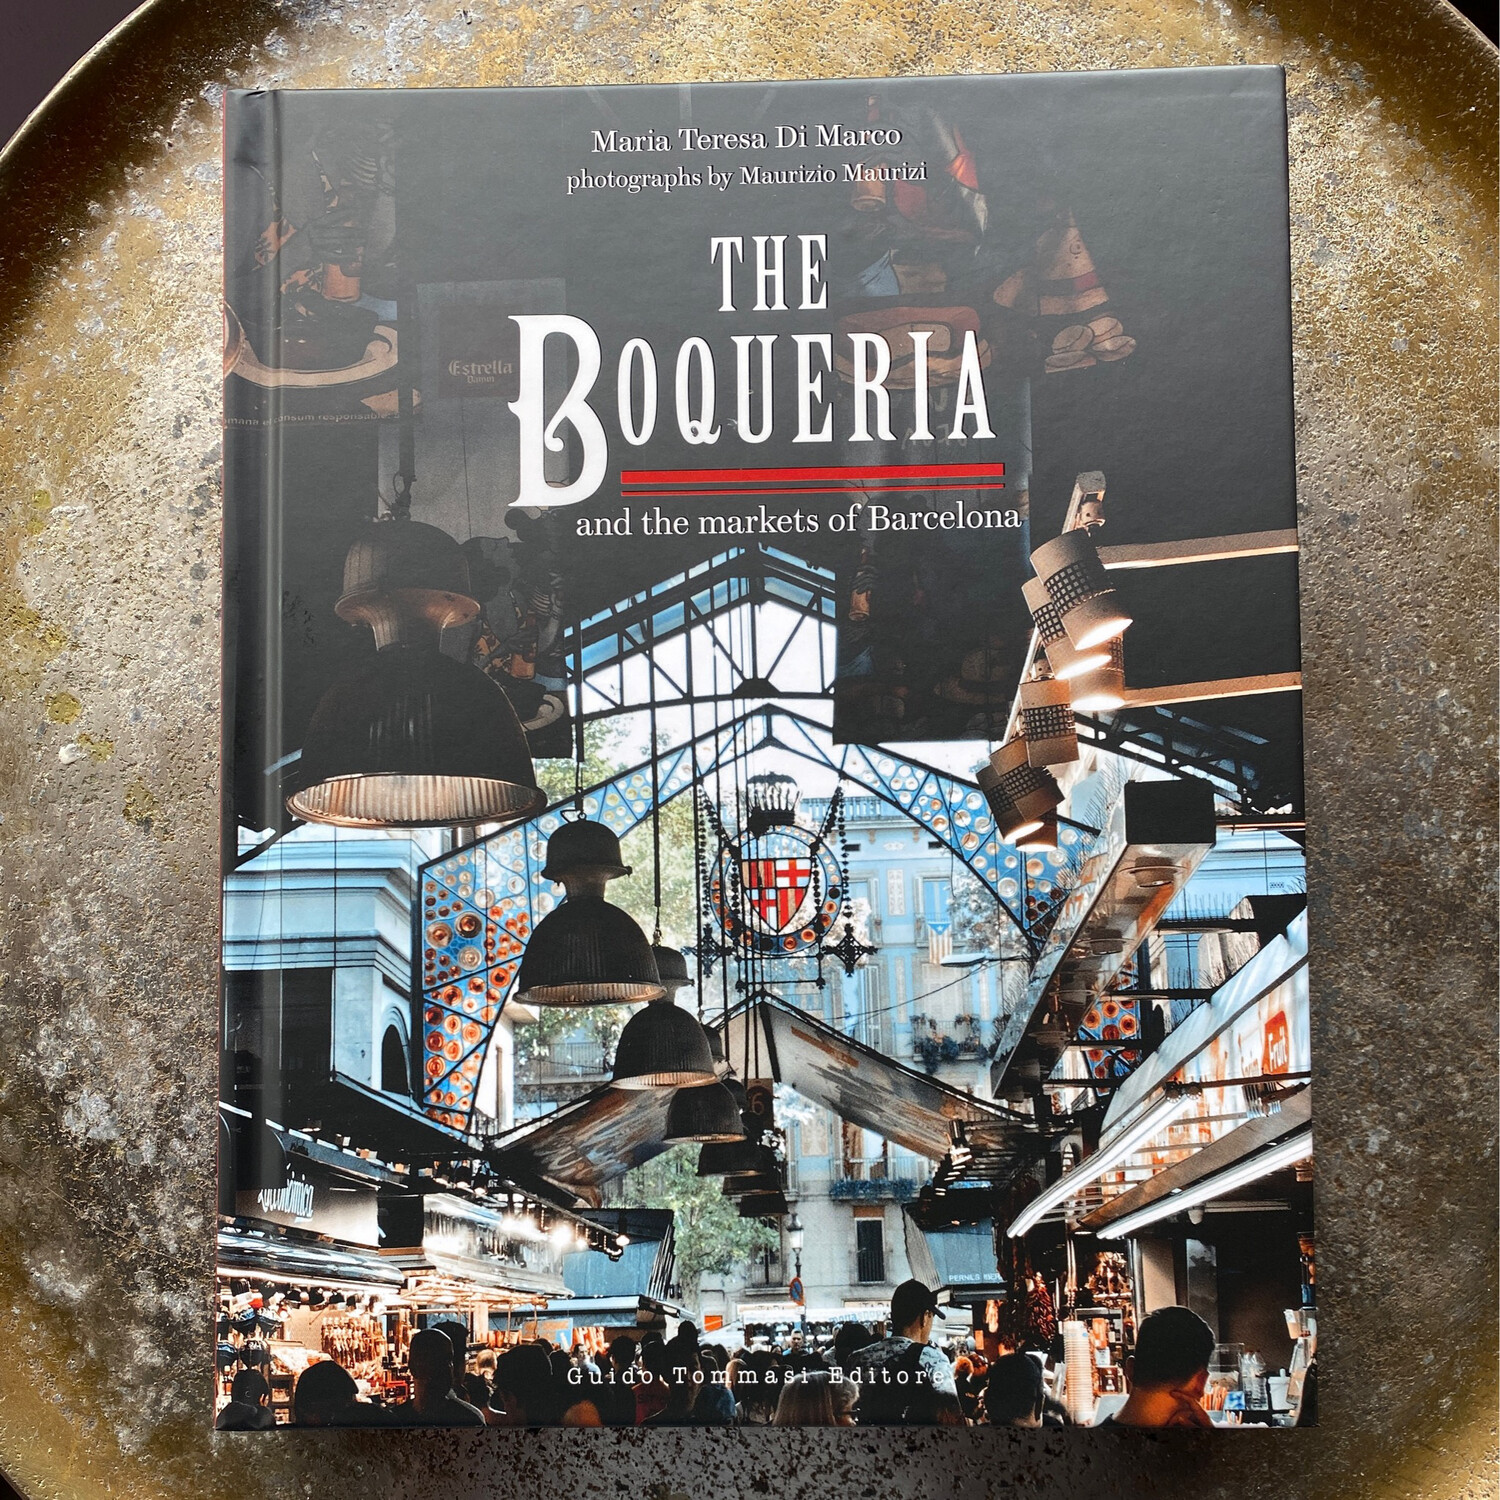 The Boqueria and the markets of Barcelona